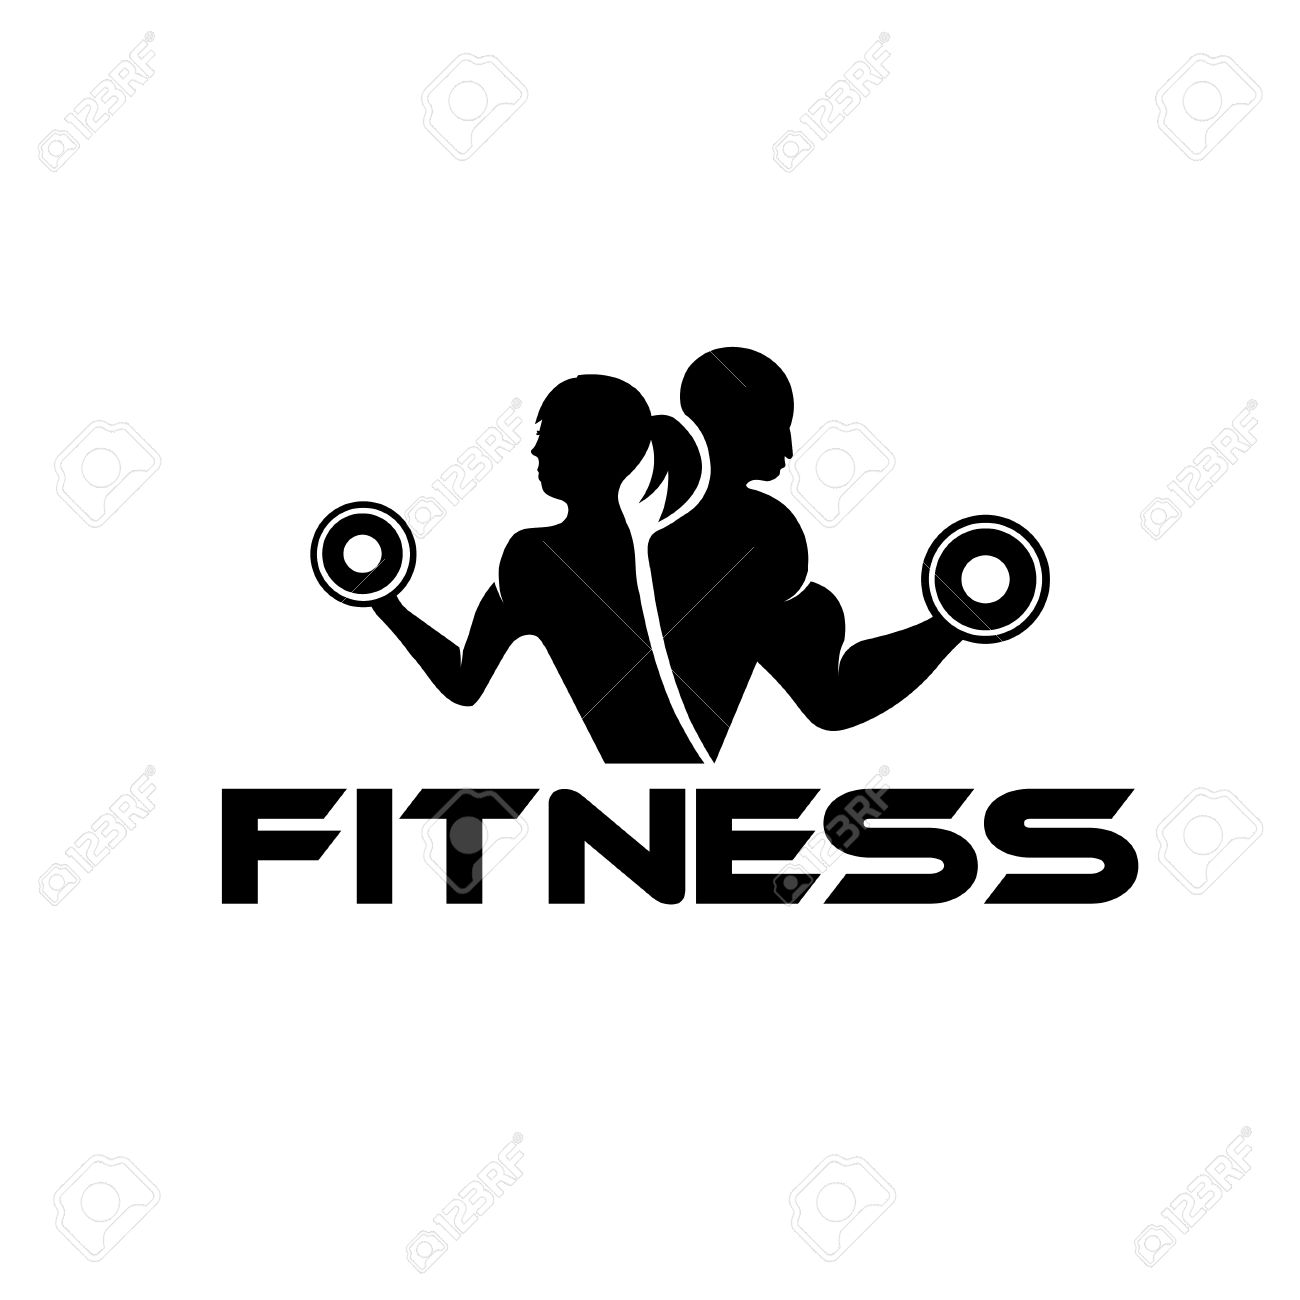 fitness icon clip art - photo #31